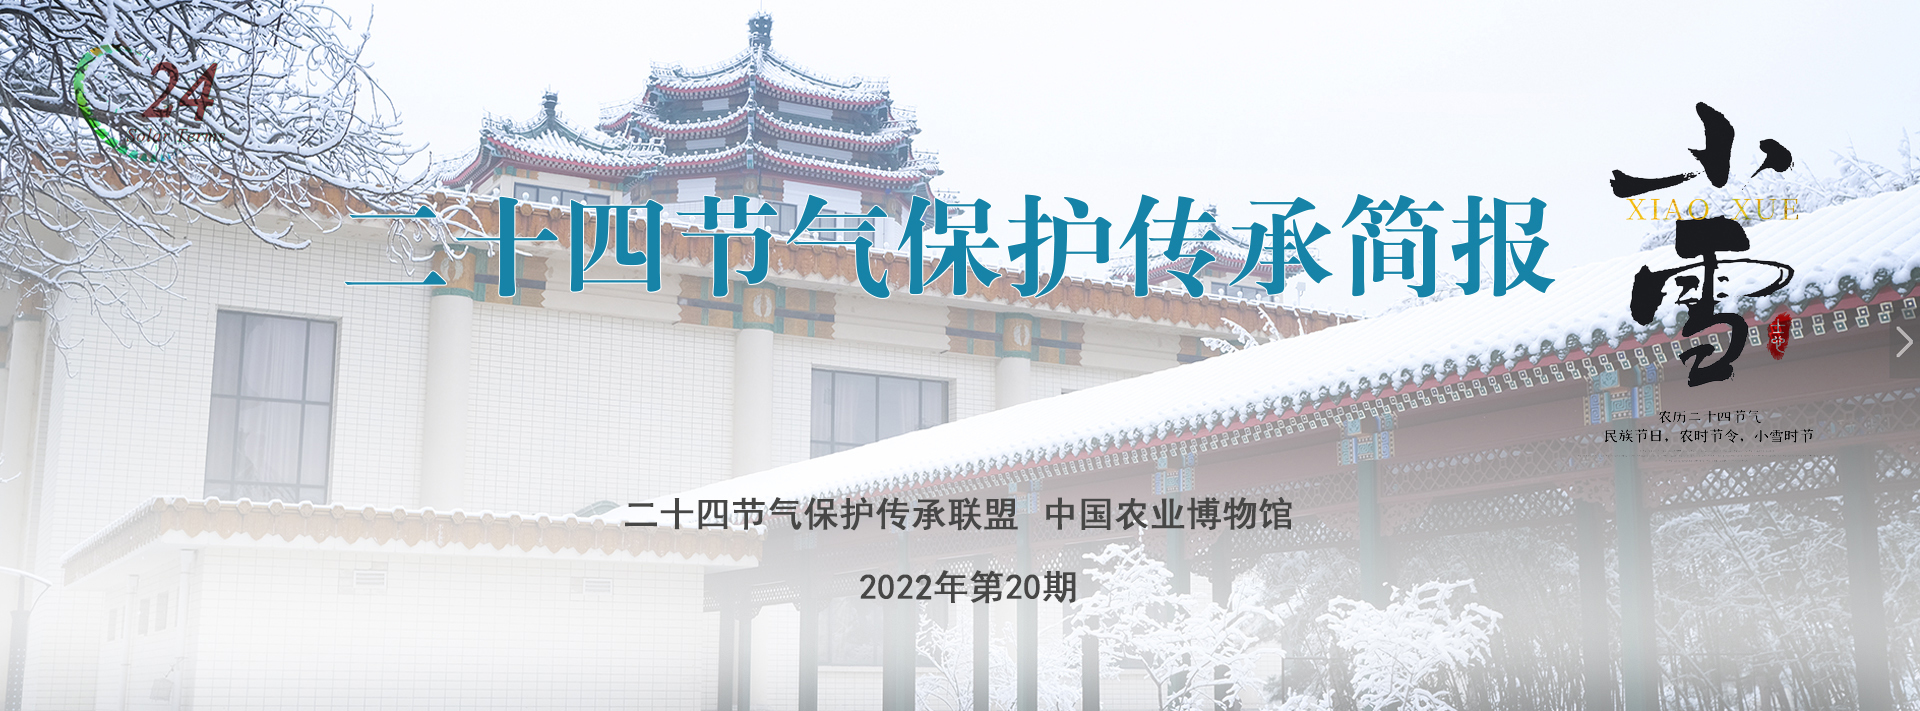 二十四节气保护传承简报 2022年第20期